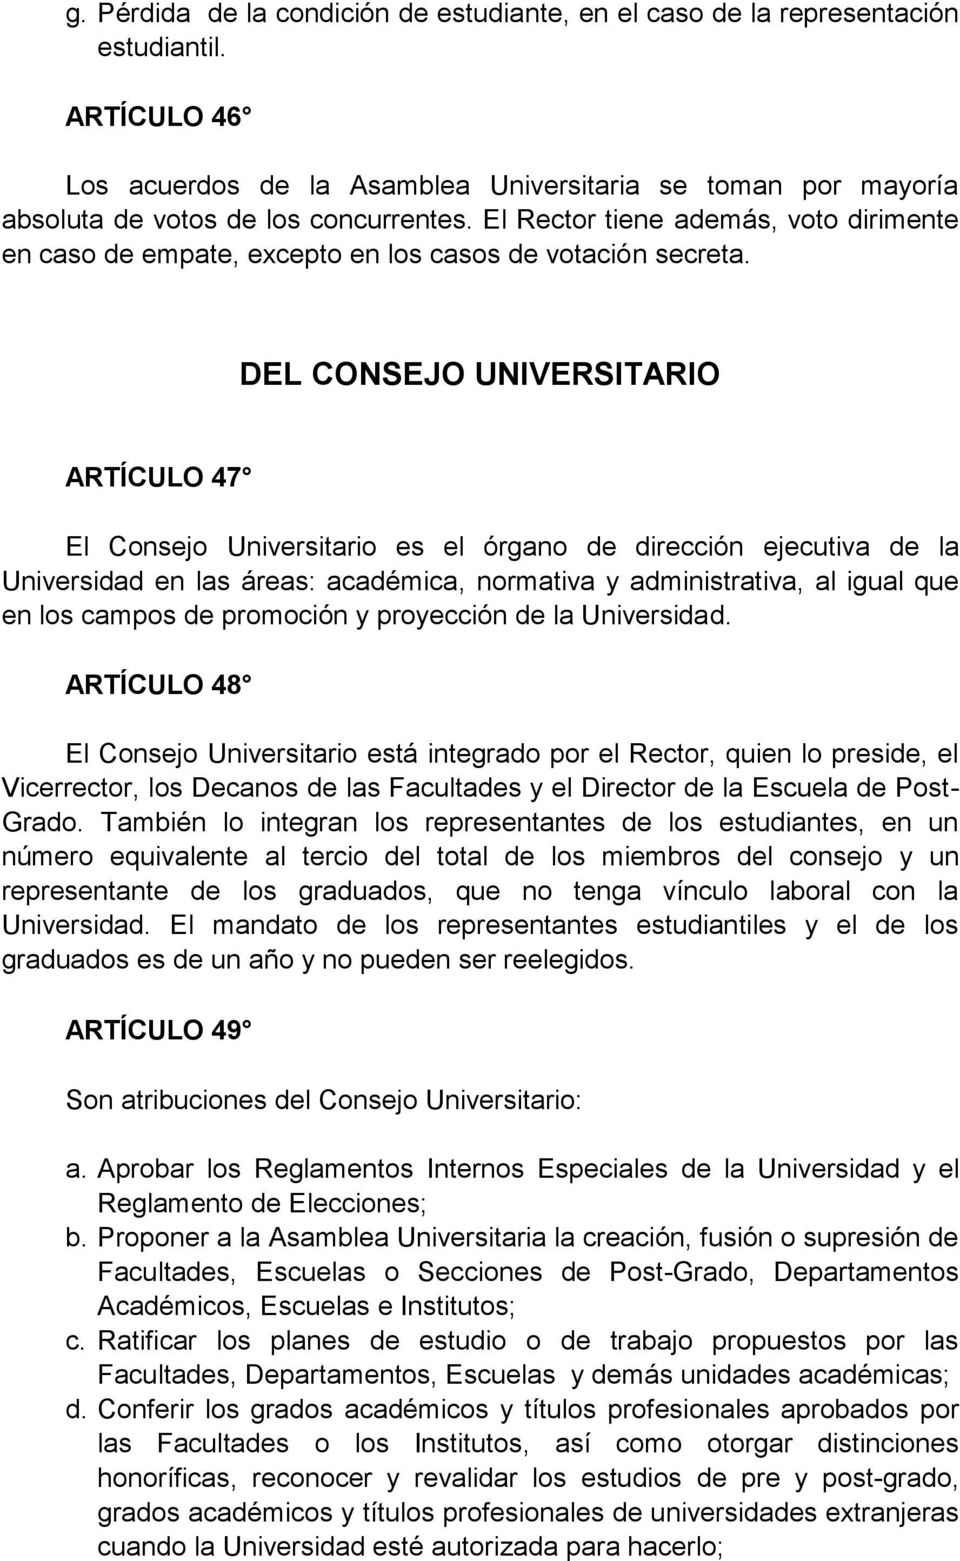 DEL CONSEJO UNIVERSITARIO ARTÍCULO 47 El Consejo Universitario es el órgano de dirección ejecutiva de la Universidad en las áreas: académica, normativa y administrativa, al igual que en los campos de